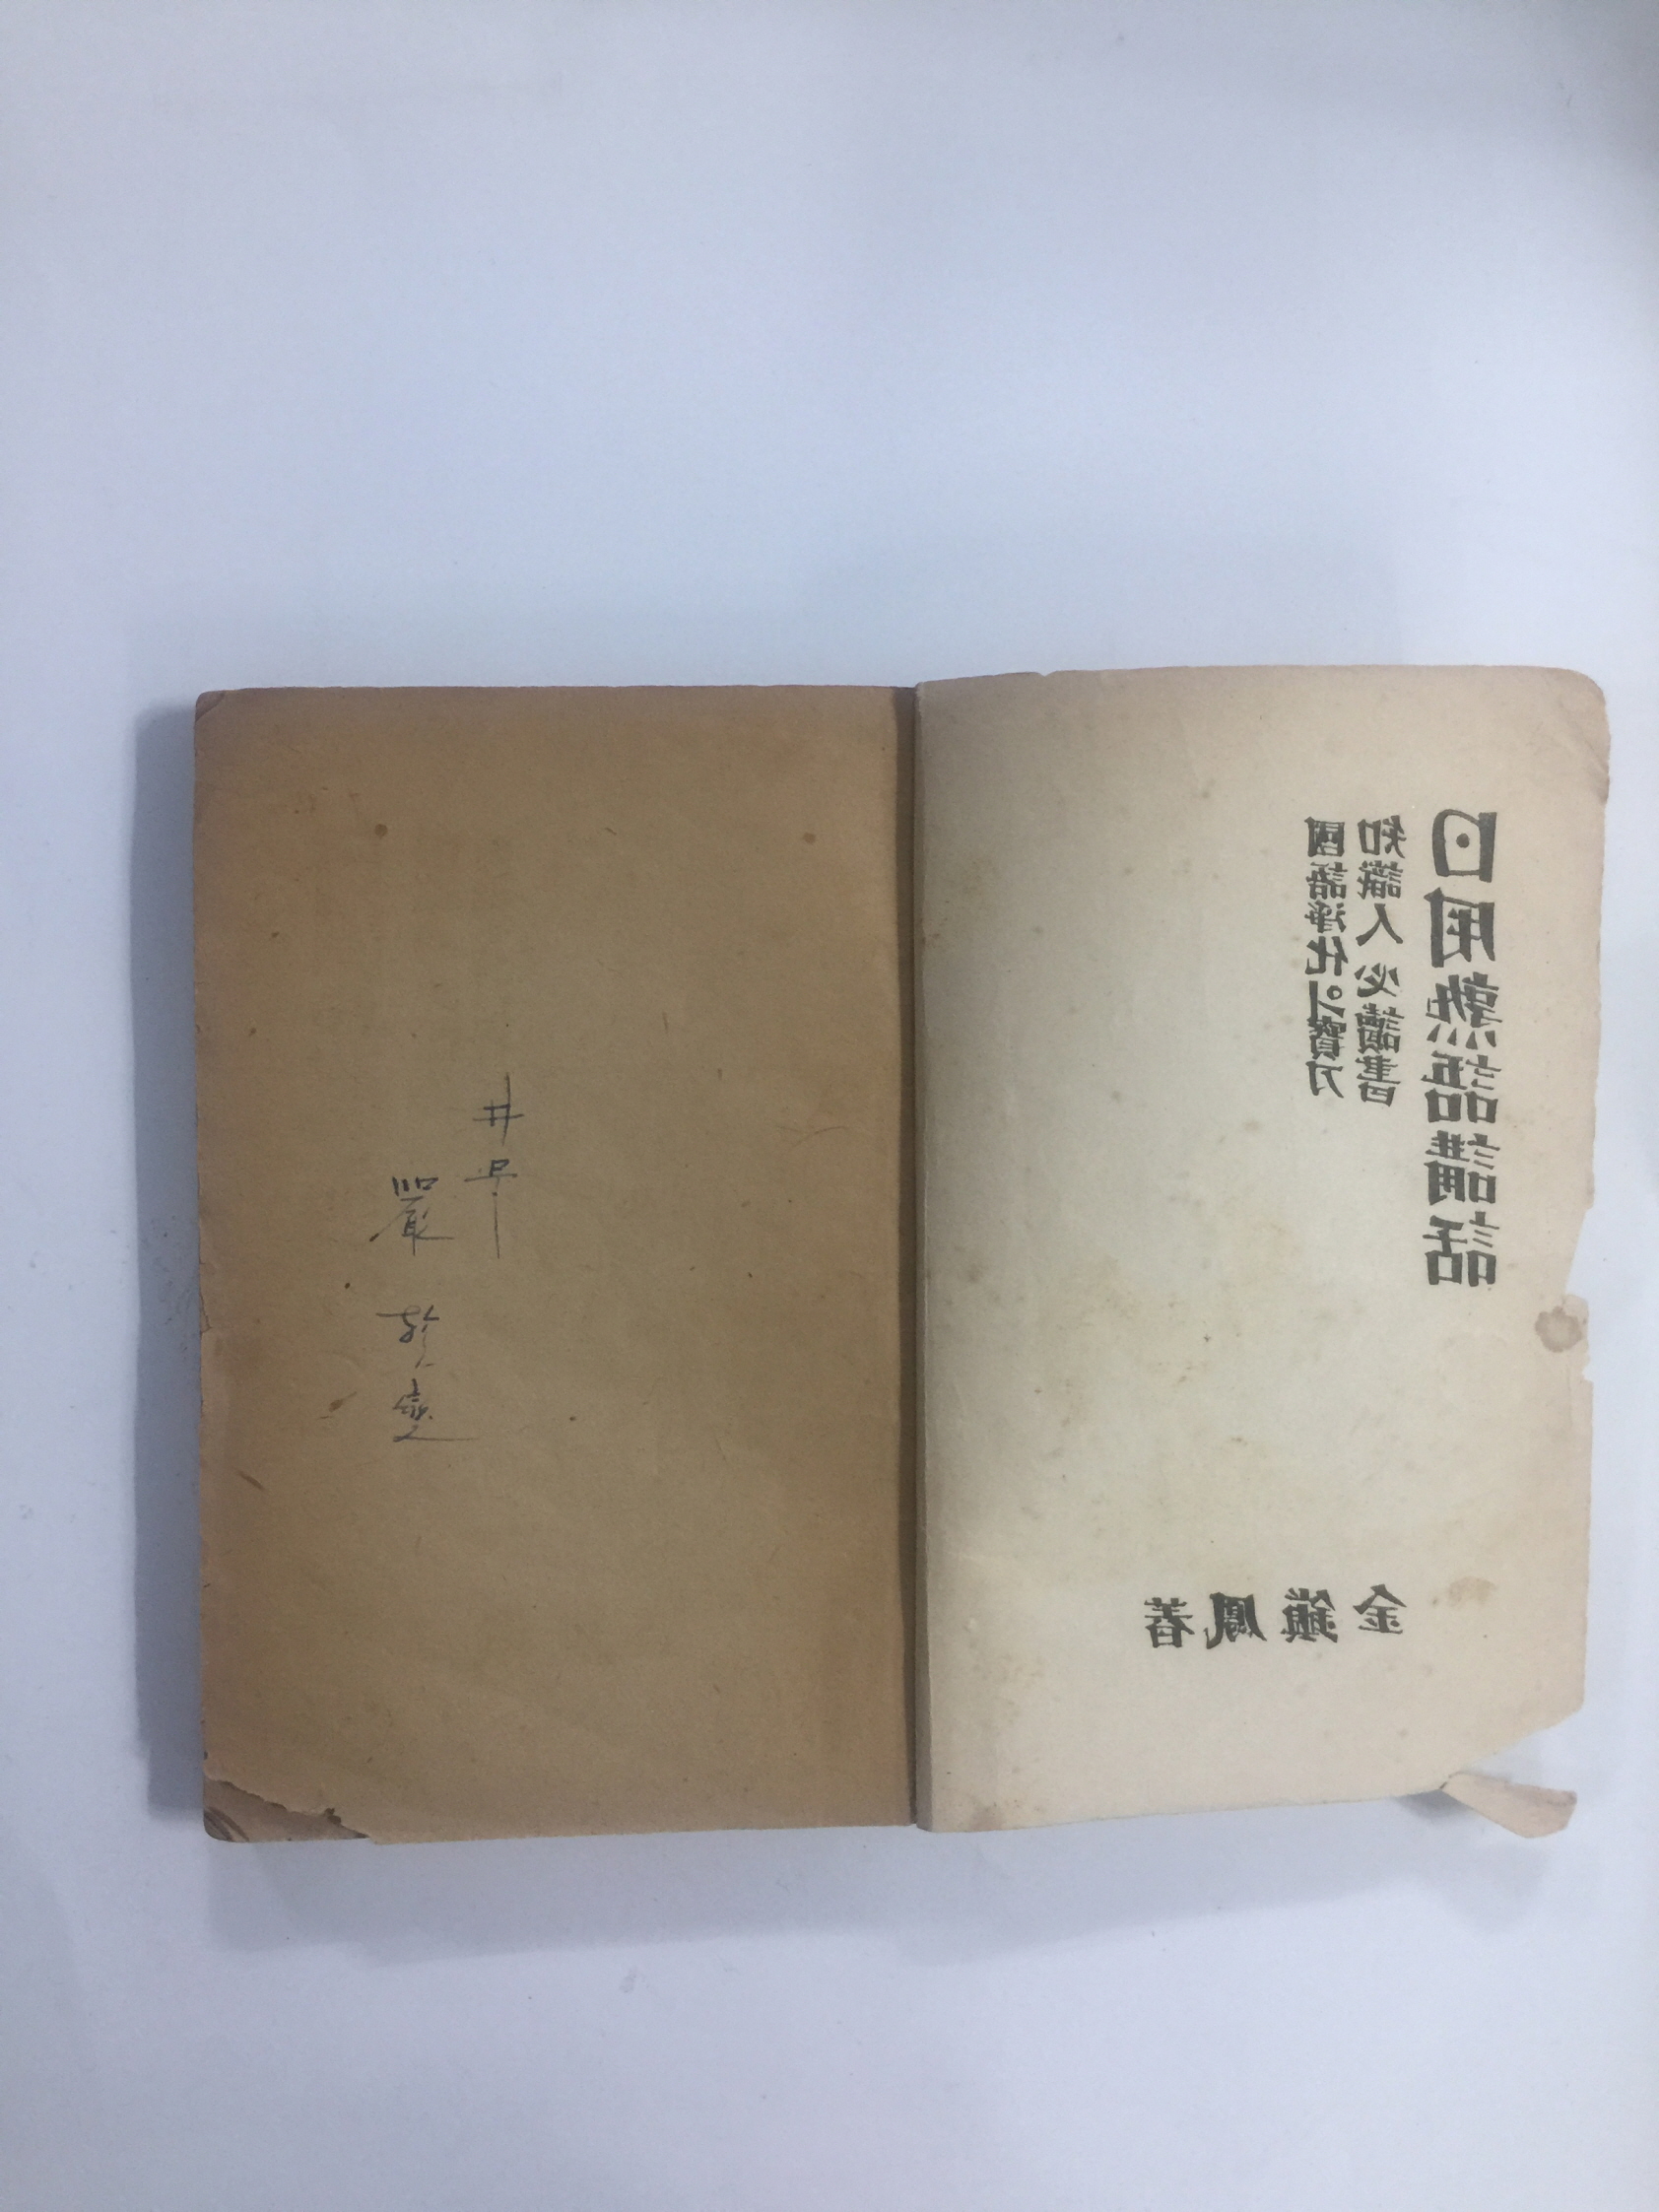 국어정화의 보도 지식인필독서 일용숙어강화 (1949년초판)